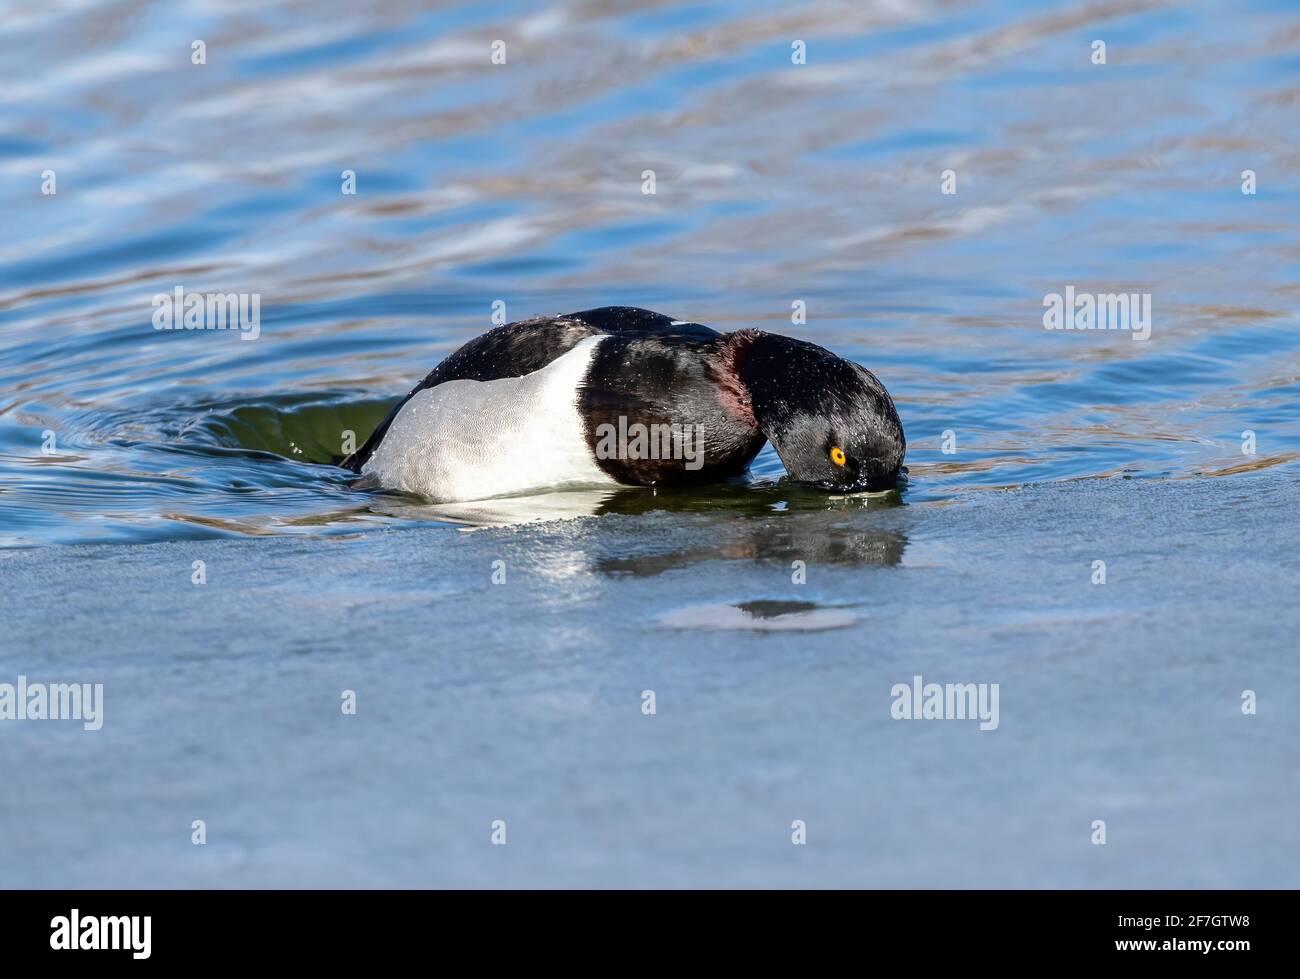 Nahaufnahme einer schönen ringhalsigen Ente in der Mitte des Tauchgangs mit seinem rötlichen Halsring sichtbar, an einem sonnigen Wintertag. Stockfoto